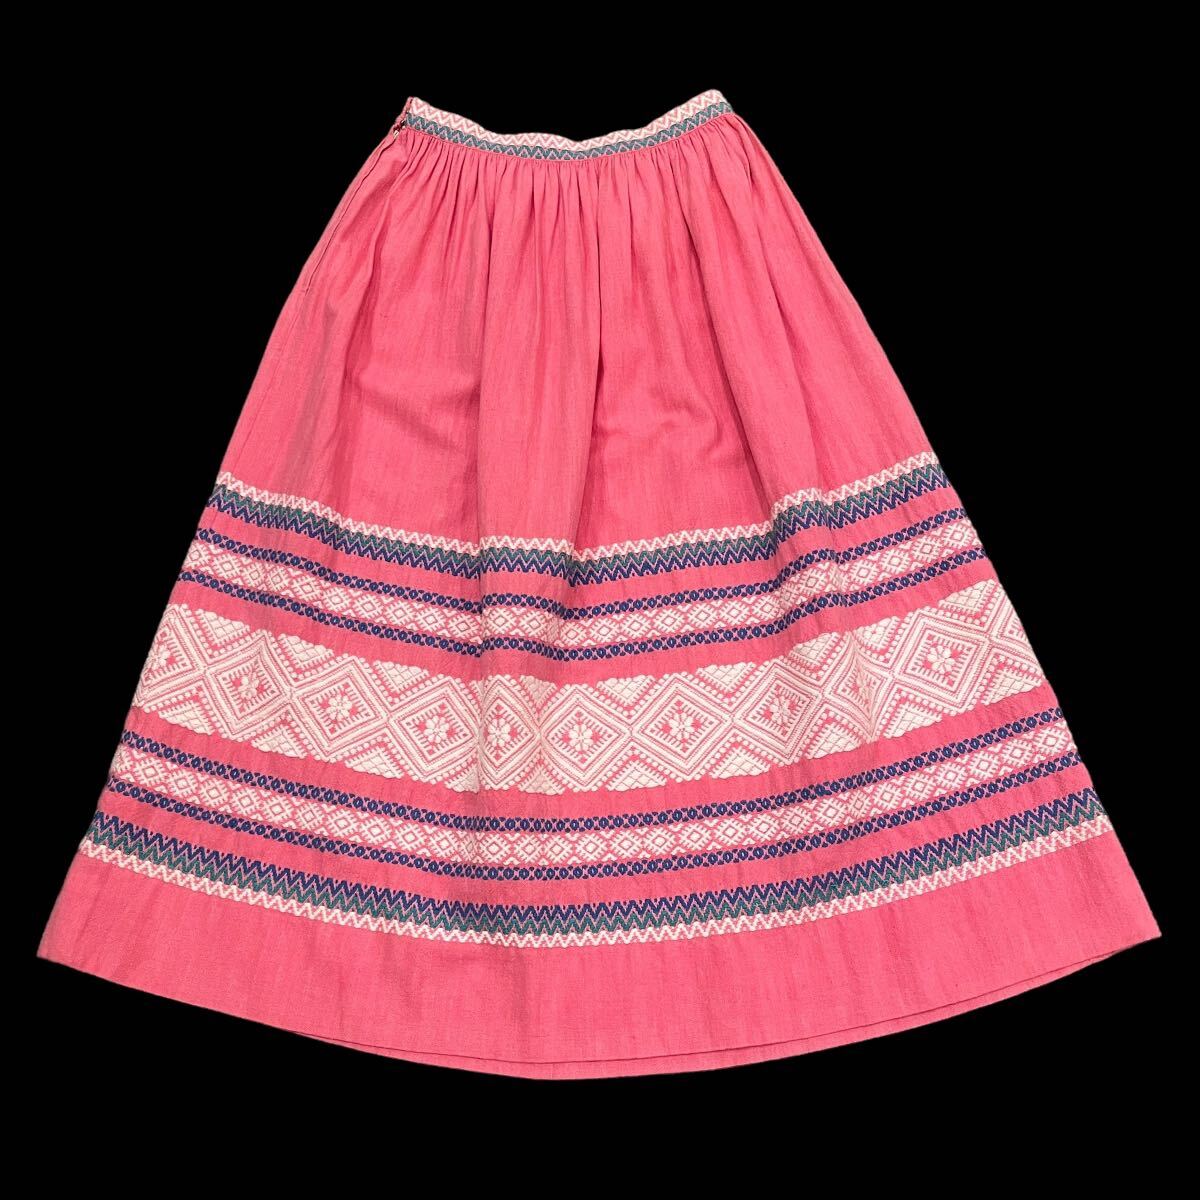 ビンテージ 50’s 60’s 刺繍 スカート ピンク 古着 フォークダンス 50年代 60年代の画像1